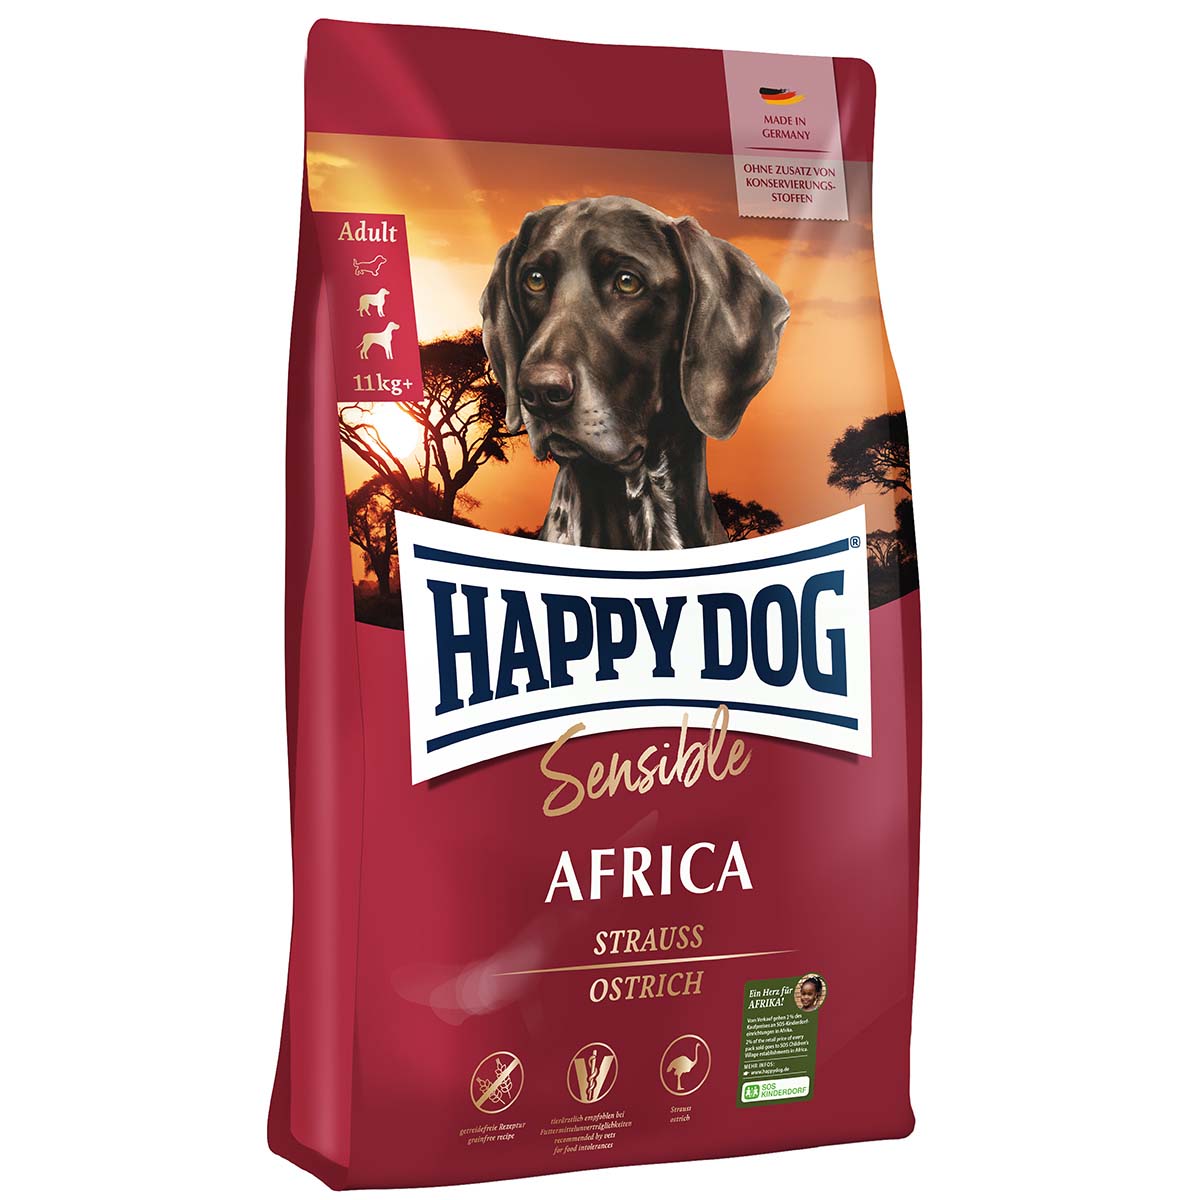 Happy Dog Supreme Sensible Africa 4kg